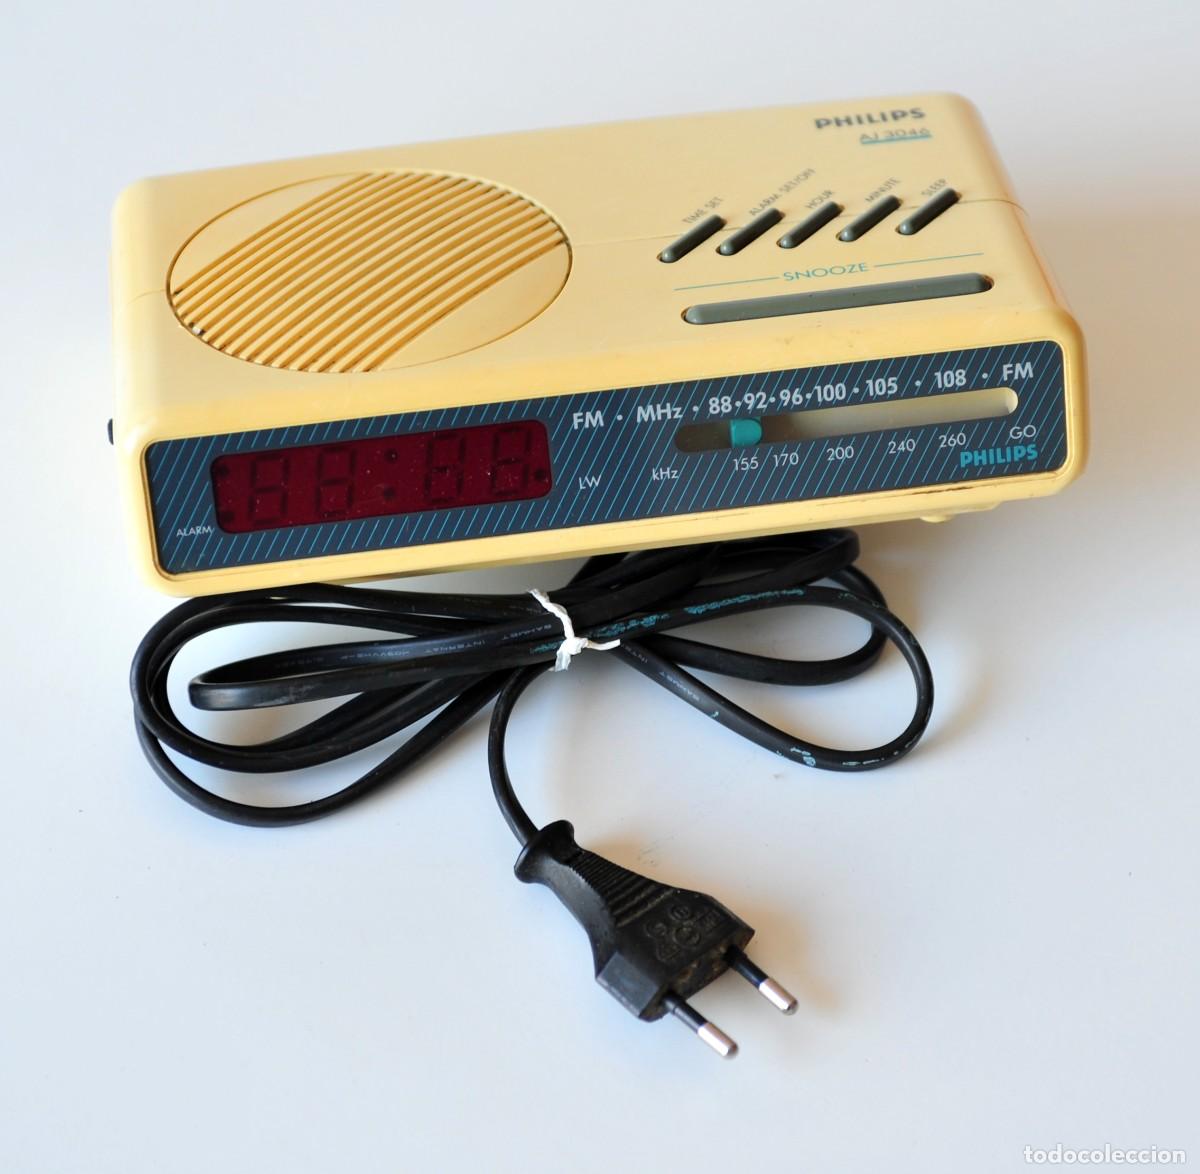 antiguo radio despertador philips - años 70 - Compra venta en